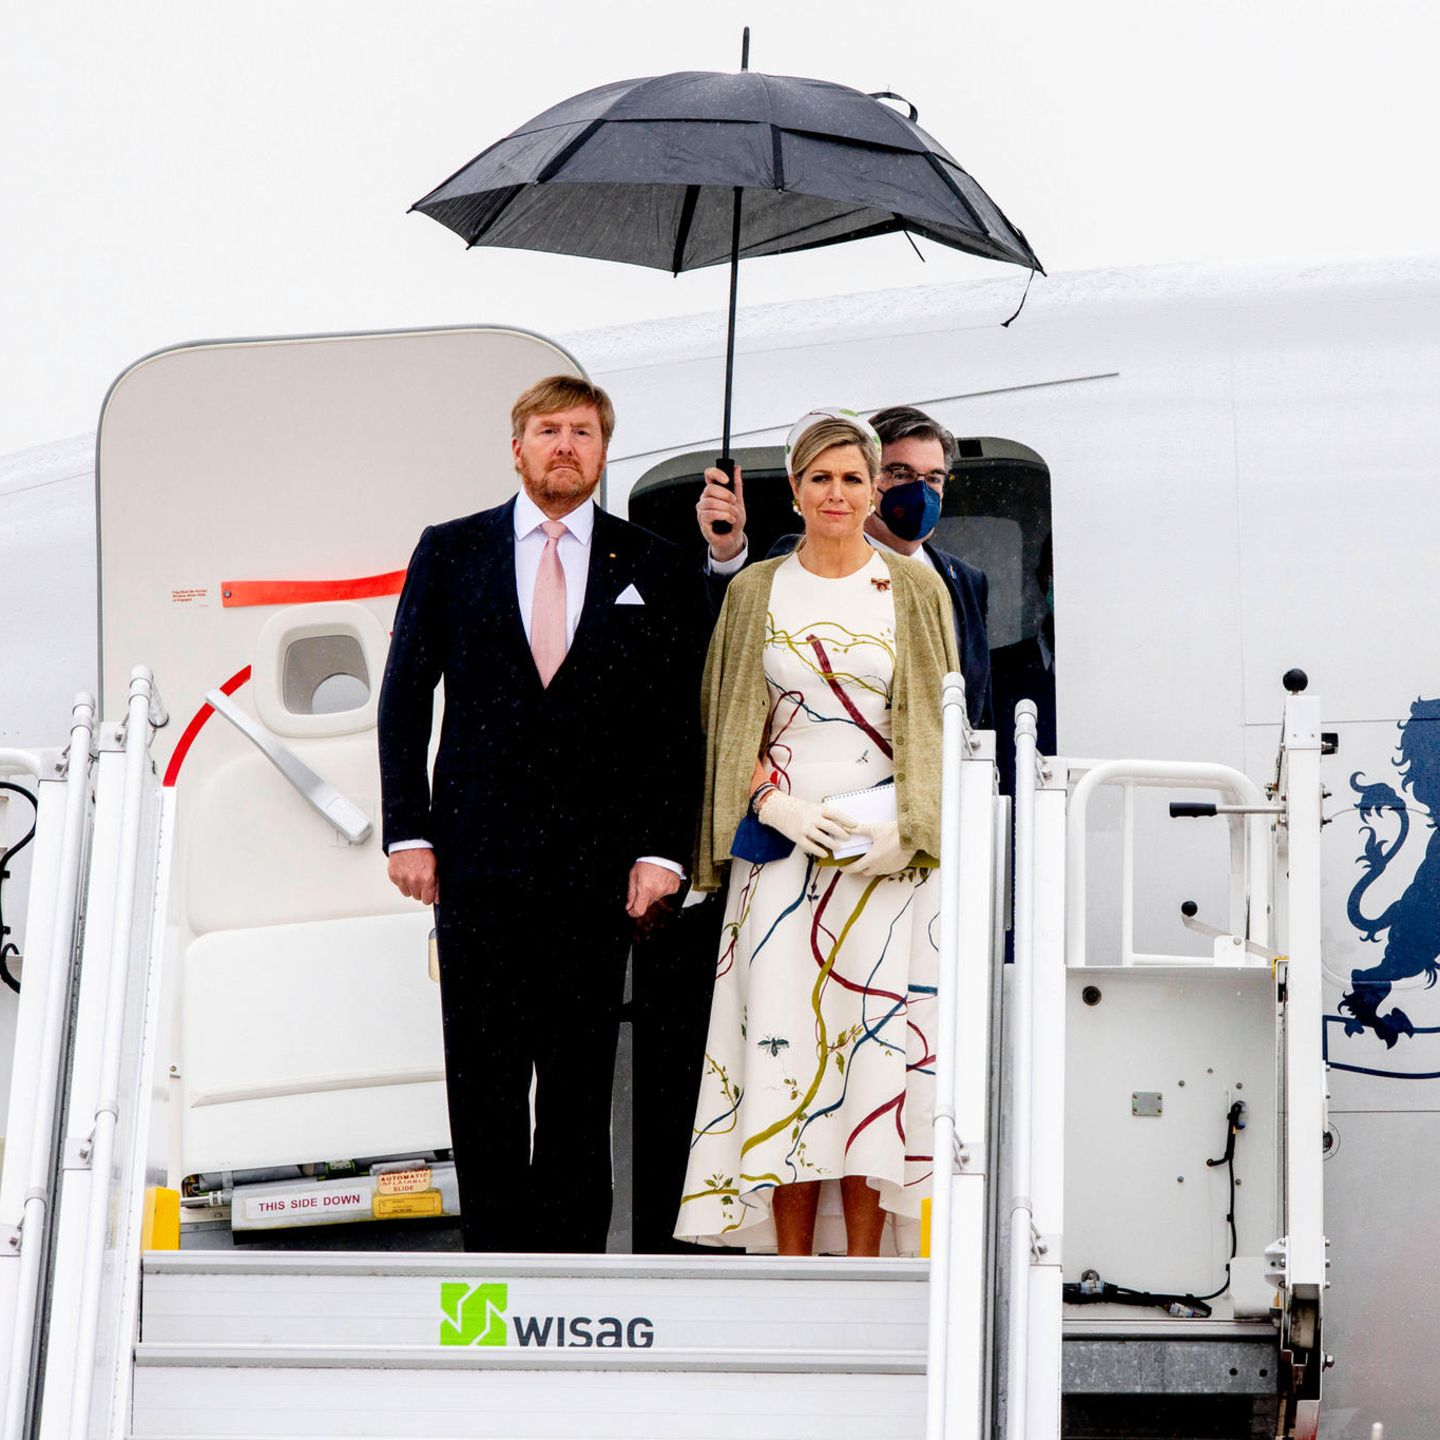 Zum Staatsbesuch von Königin Máxima und König Willem-Alexander zeigt sich Berlin nicht gerade von seiner sonnigen Seite. Máxima zeigt sich gewohnt stylisch in einem weißen Vokuhila-Kleid mit auffälligem Muster. Wer genauer hinsieht, erkennt, dass das Muster auch auf ihrem Haarreifen zu erkennen ist. Ein perfekt durchdachter Look... 